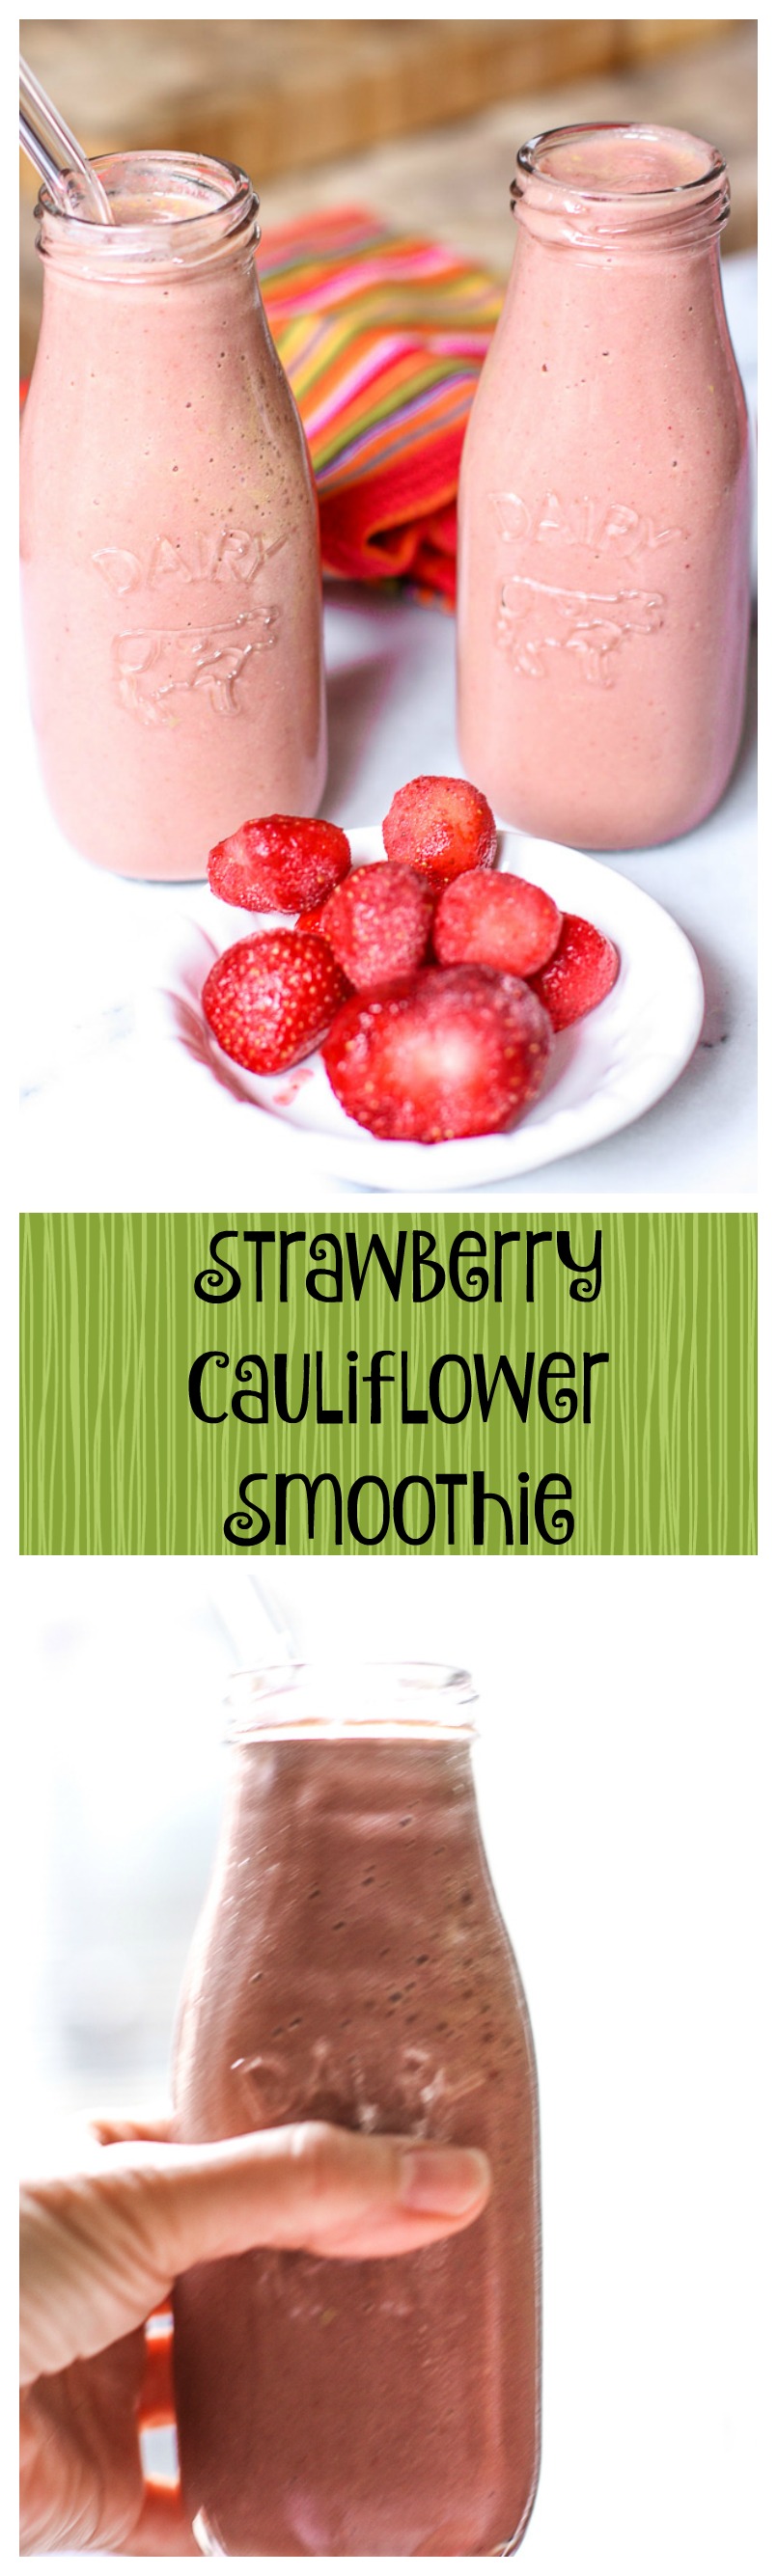 strawberry cauliflower smoothie